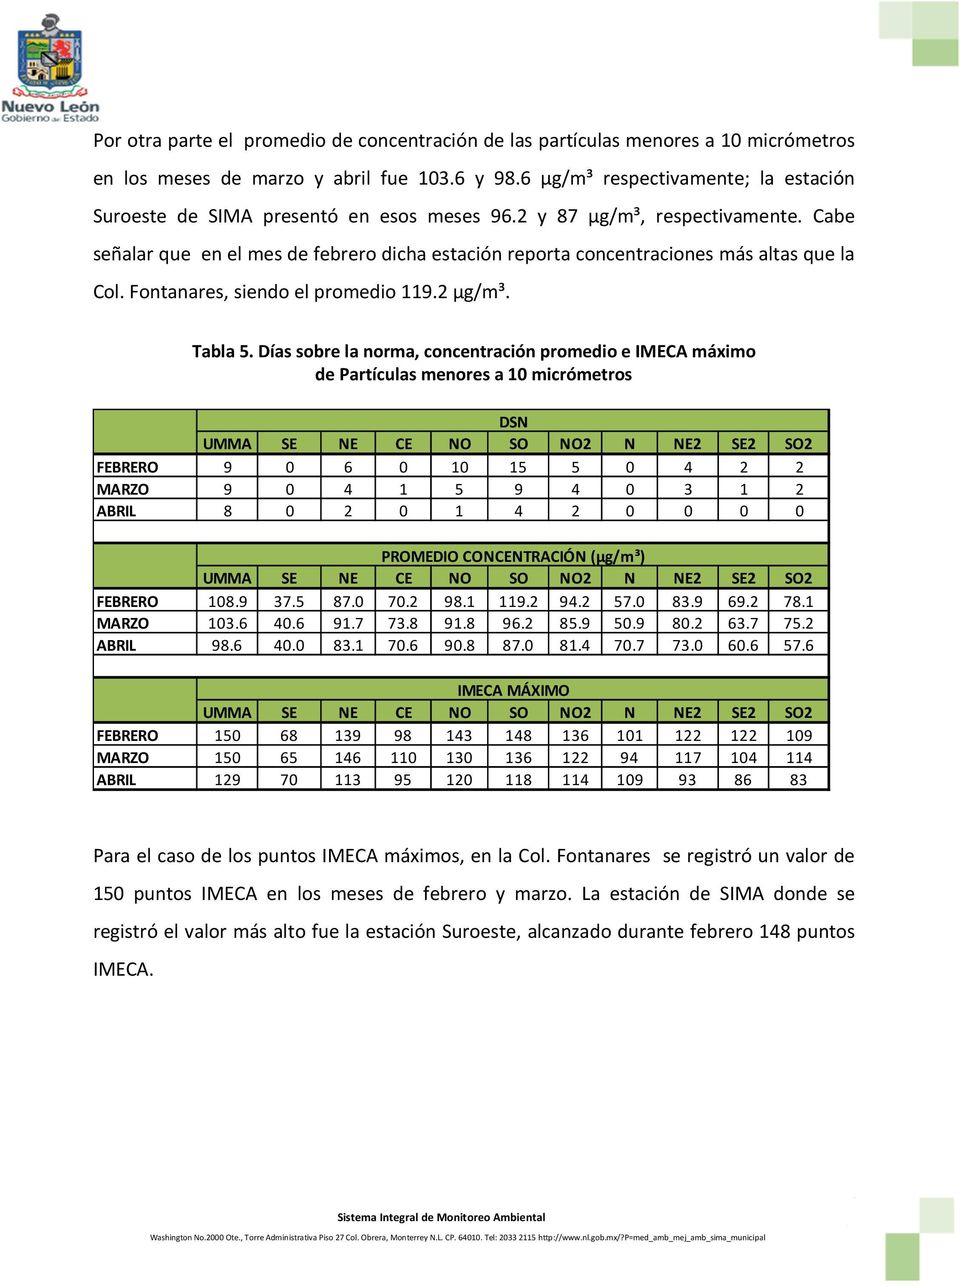 Cabe señalar que en el mes de febrero dicha estación reporta concentraciones más altas que la Col. Fontanares, siendo el promedio 119.2 µg/m³. Tabla 5.